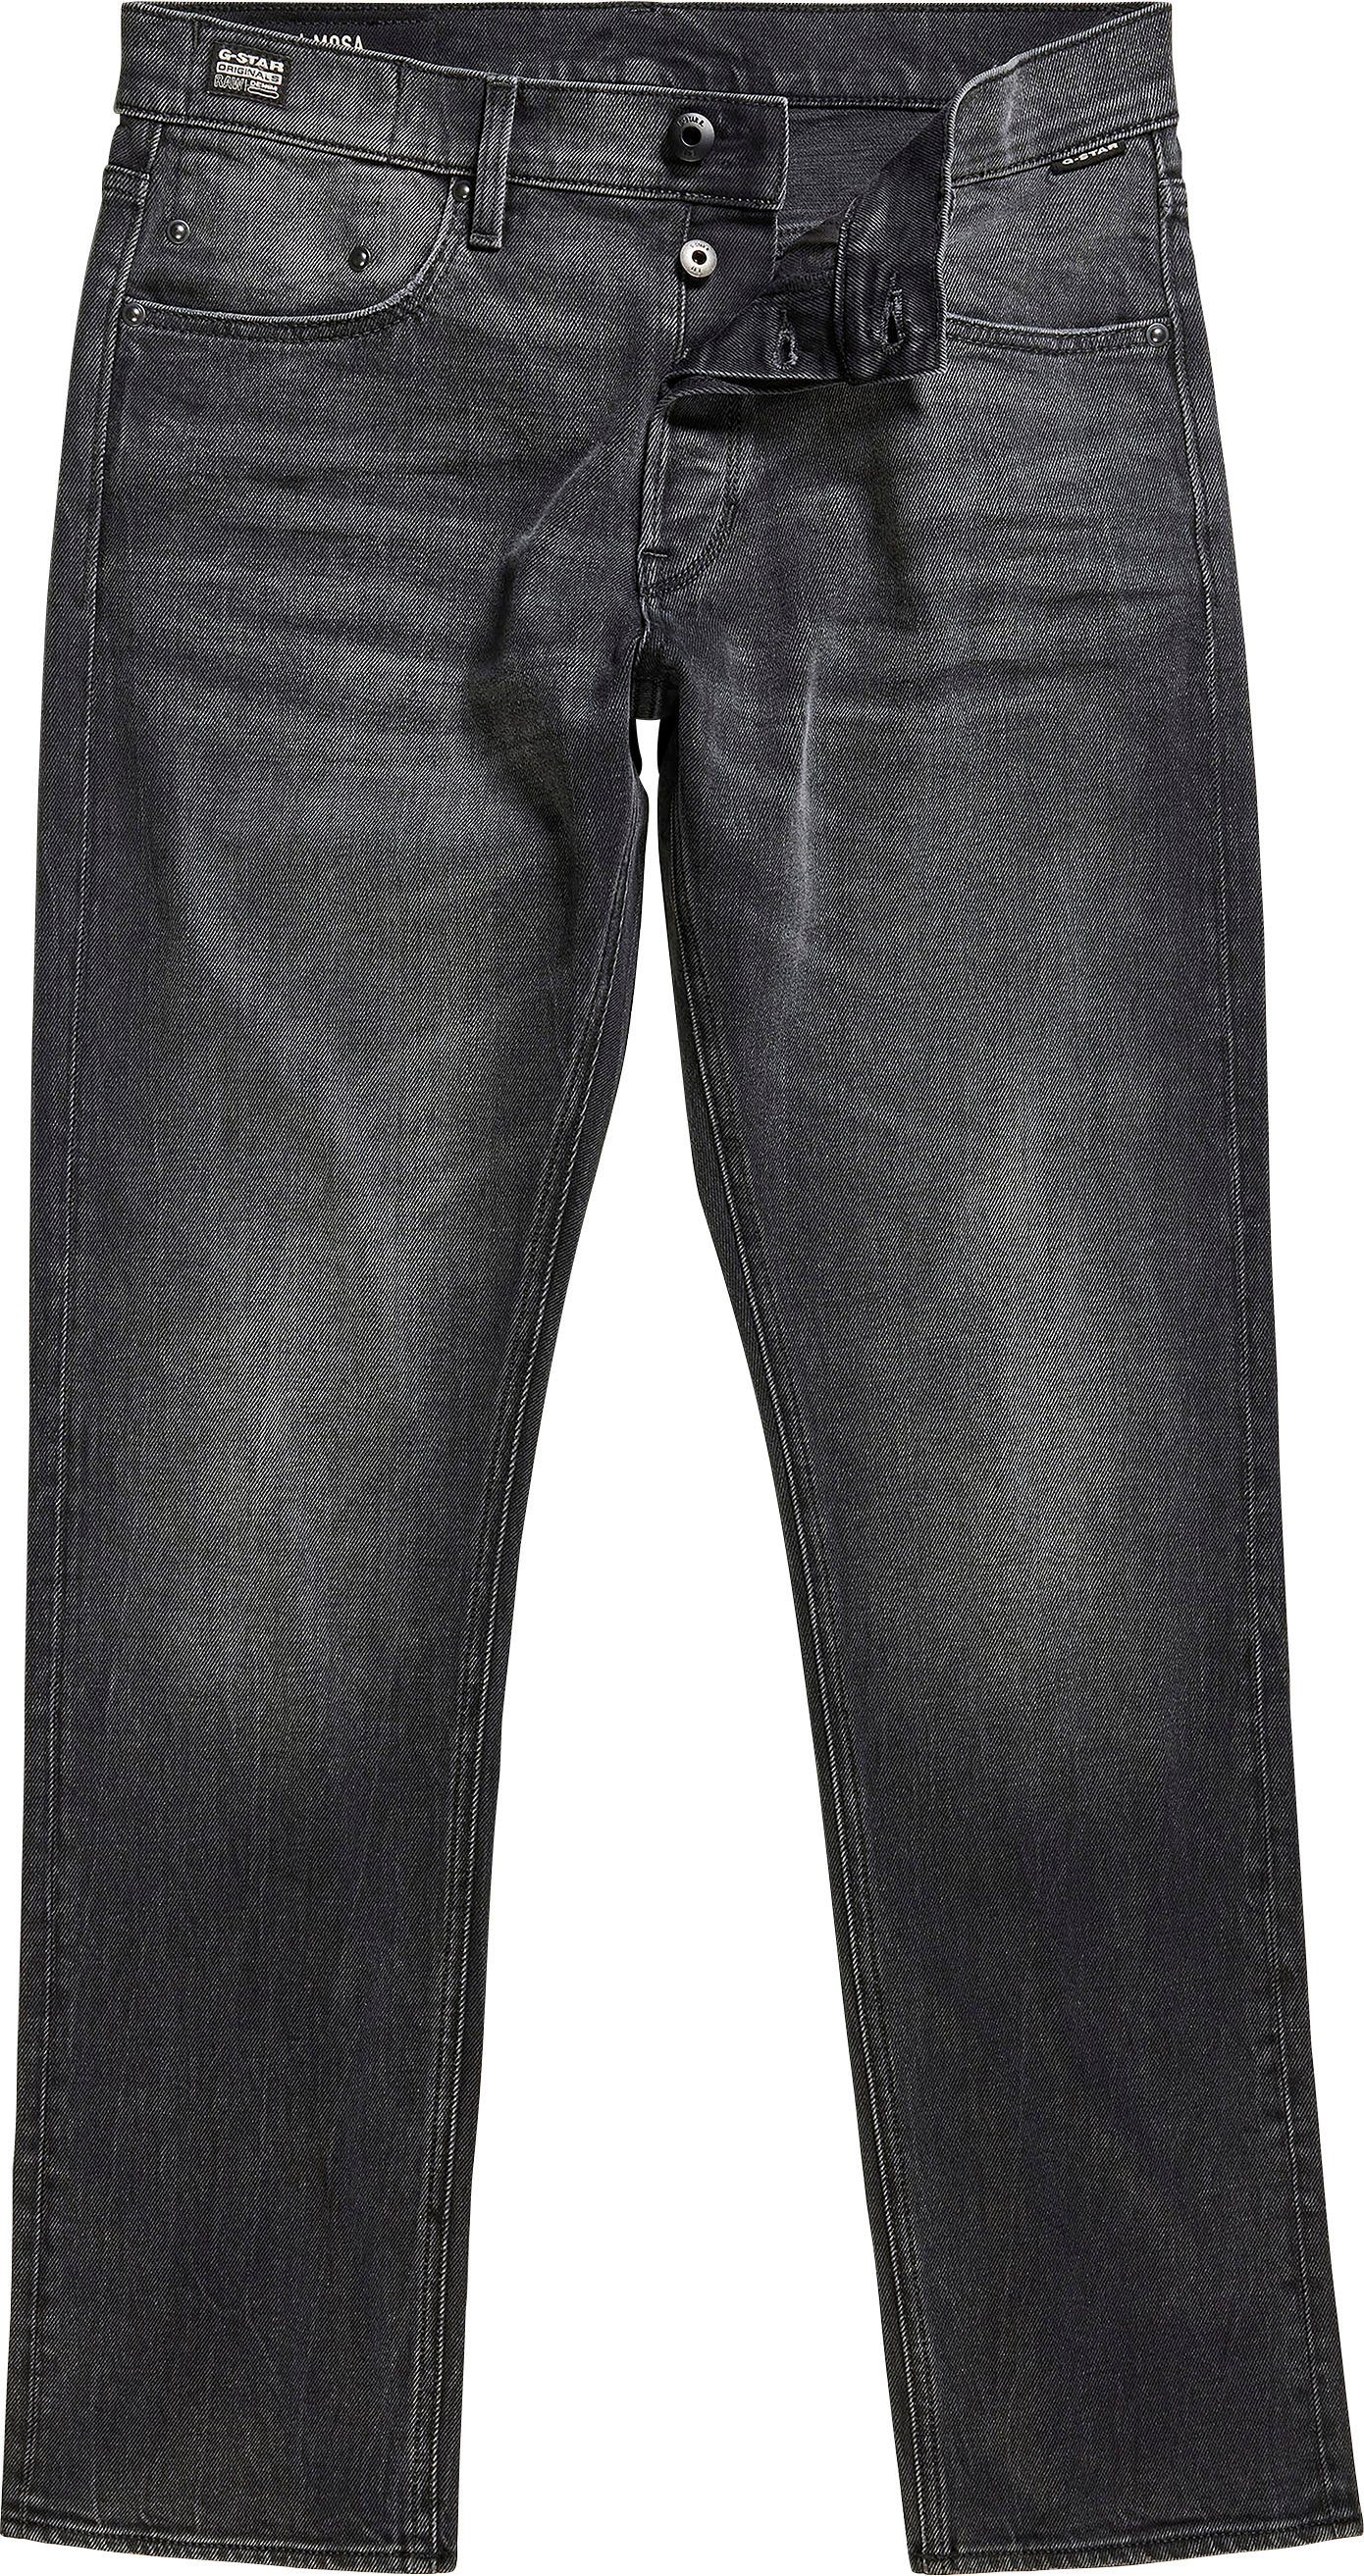 Straight RAW Nähten worn Straight-Jeans black hellen mit Mosa G-Star